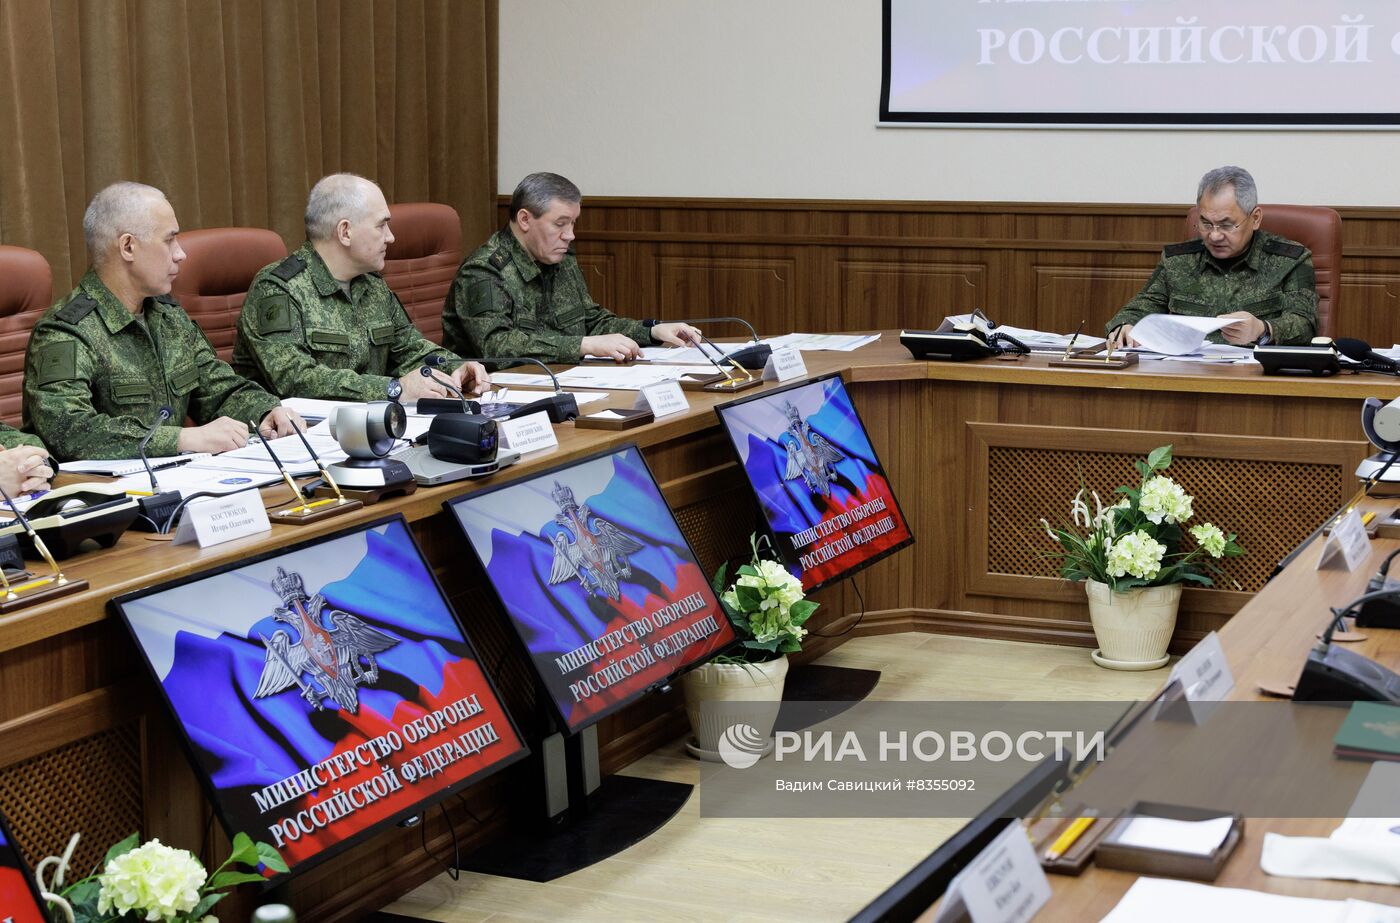 Министр обороны РФ С. Шойгу провел совещание по вопросу увеличения численности ВС РФ